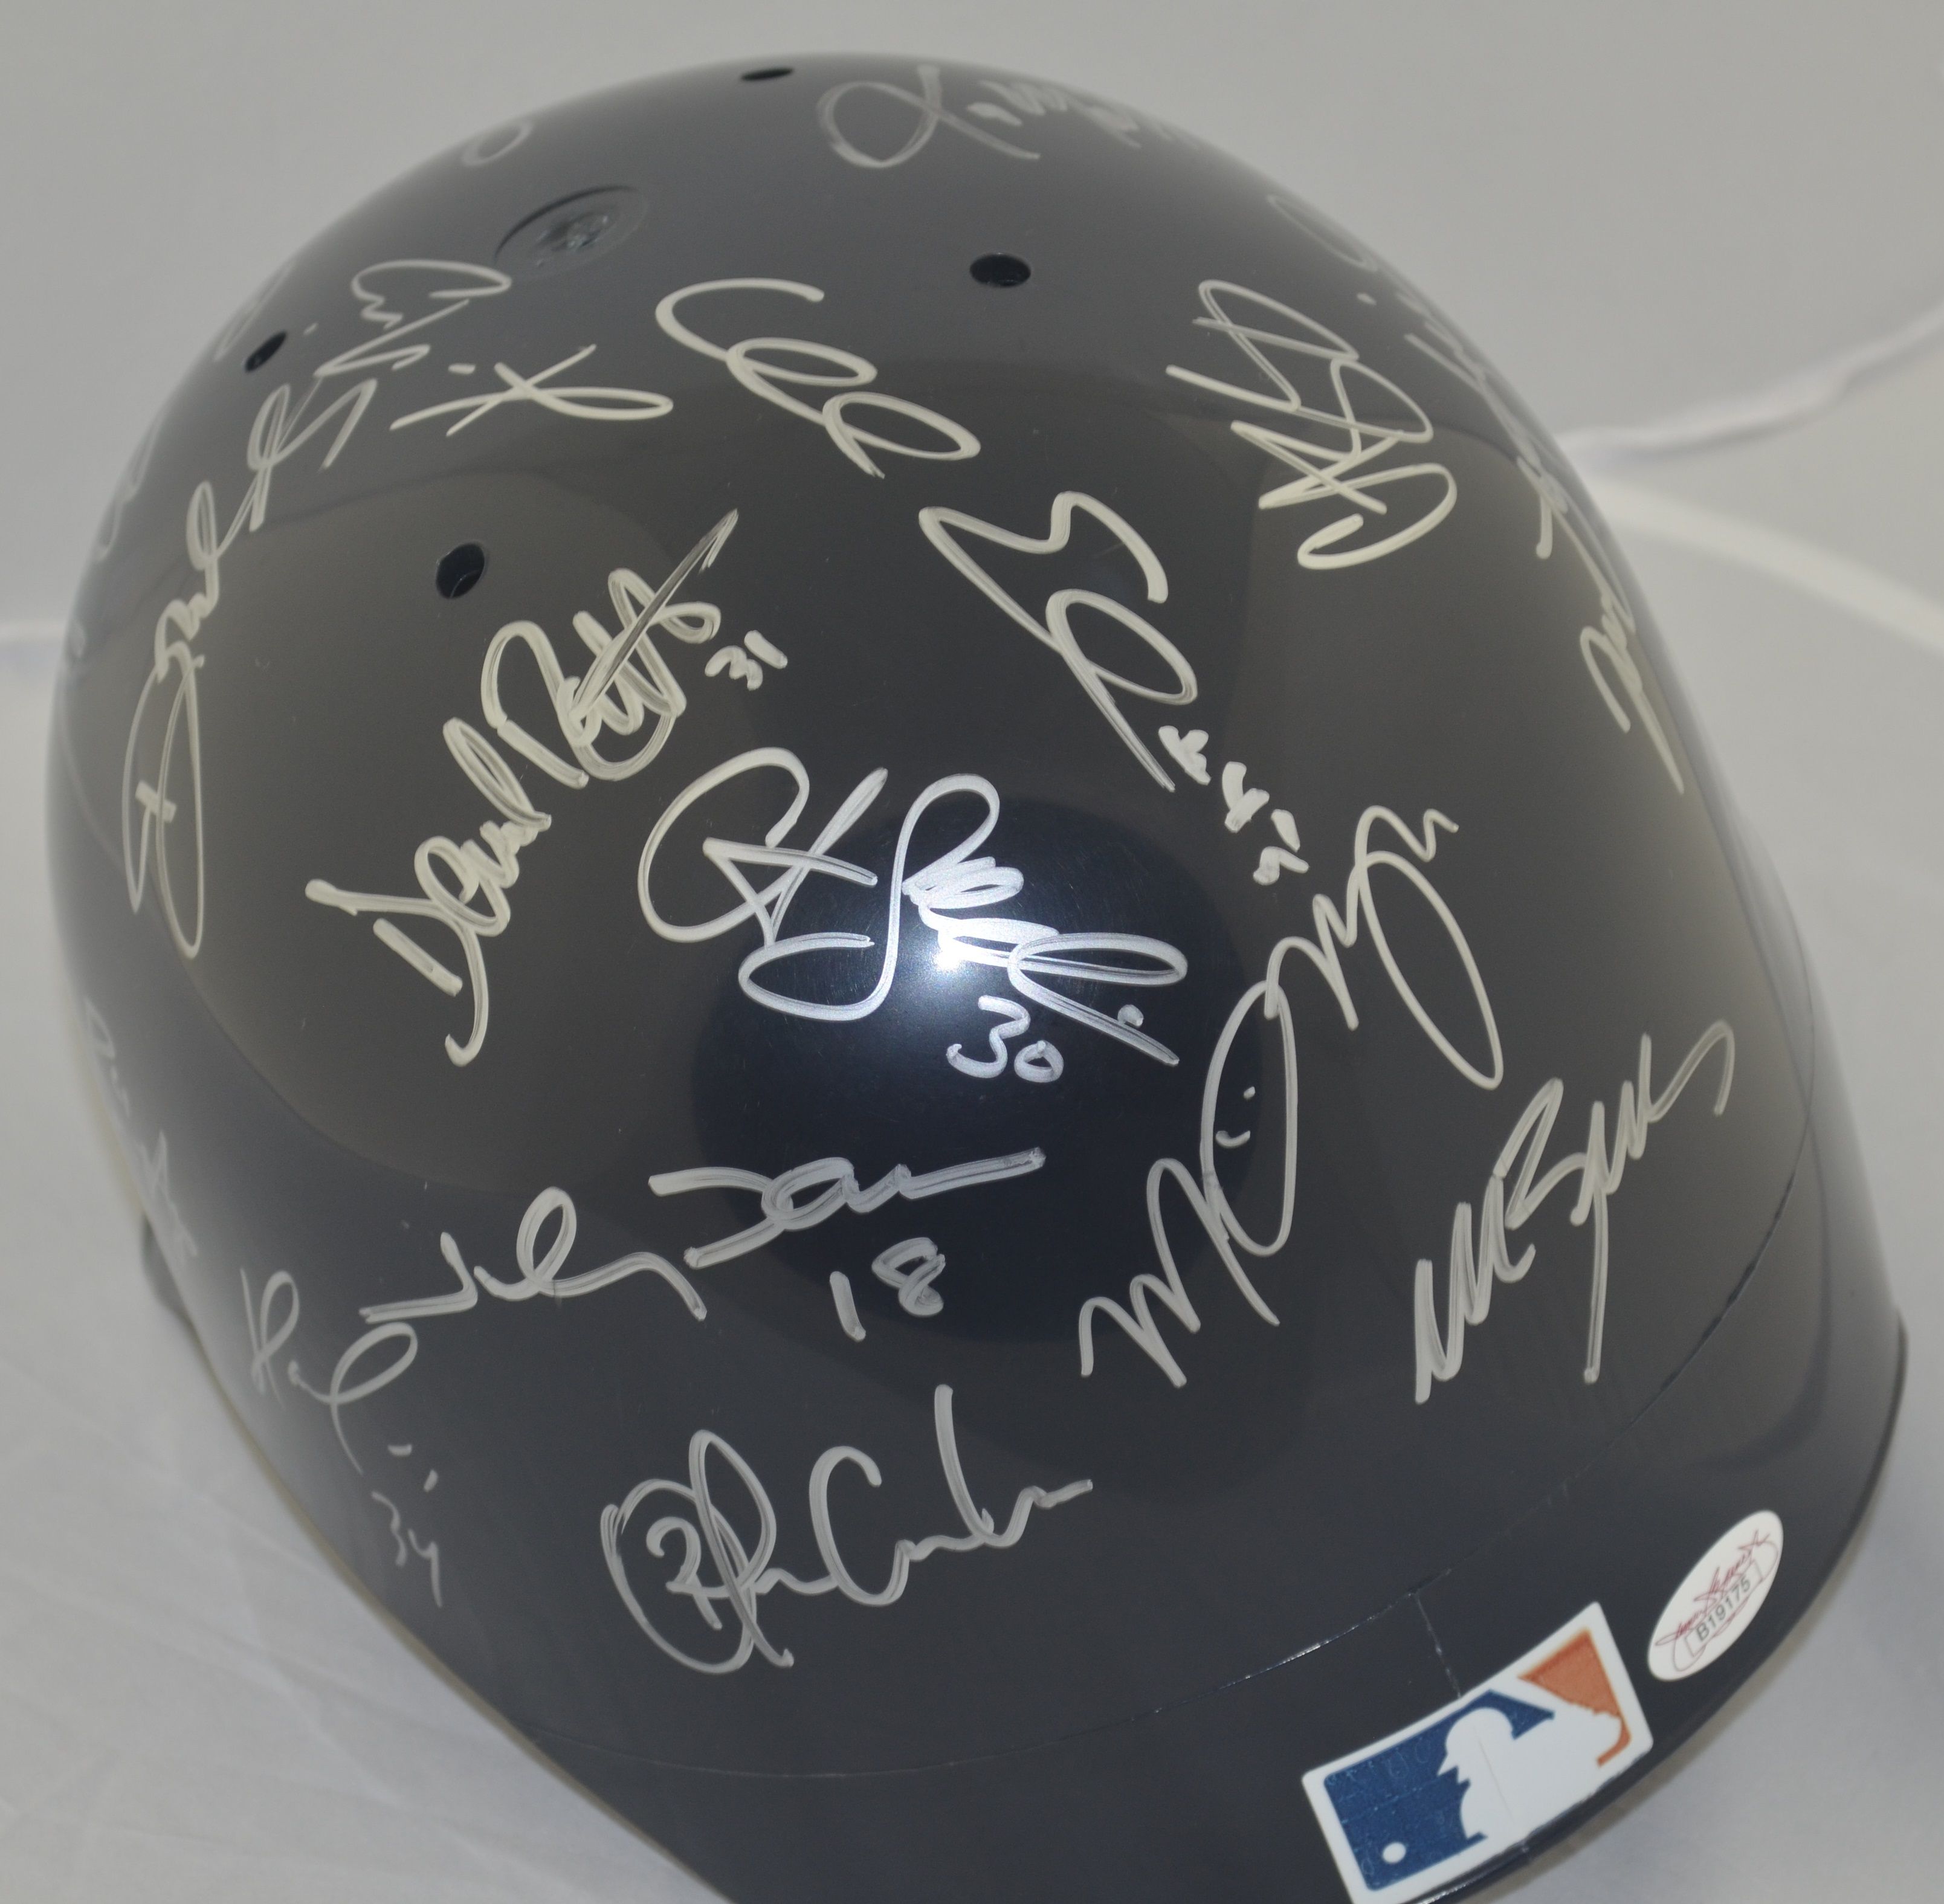 GABE KAPLER Signed baseball bat 2004 Red Sox world series champ